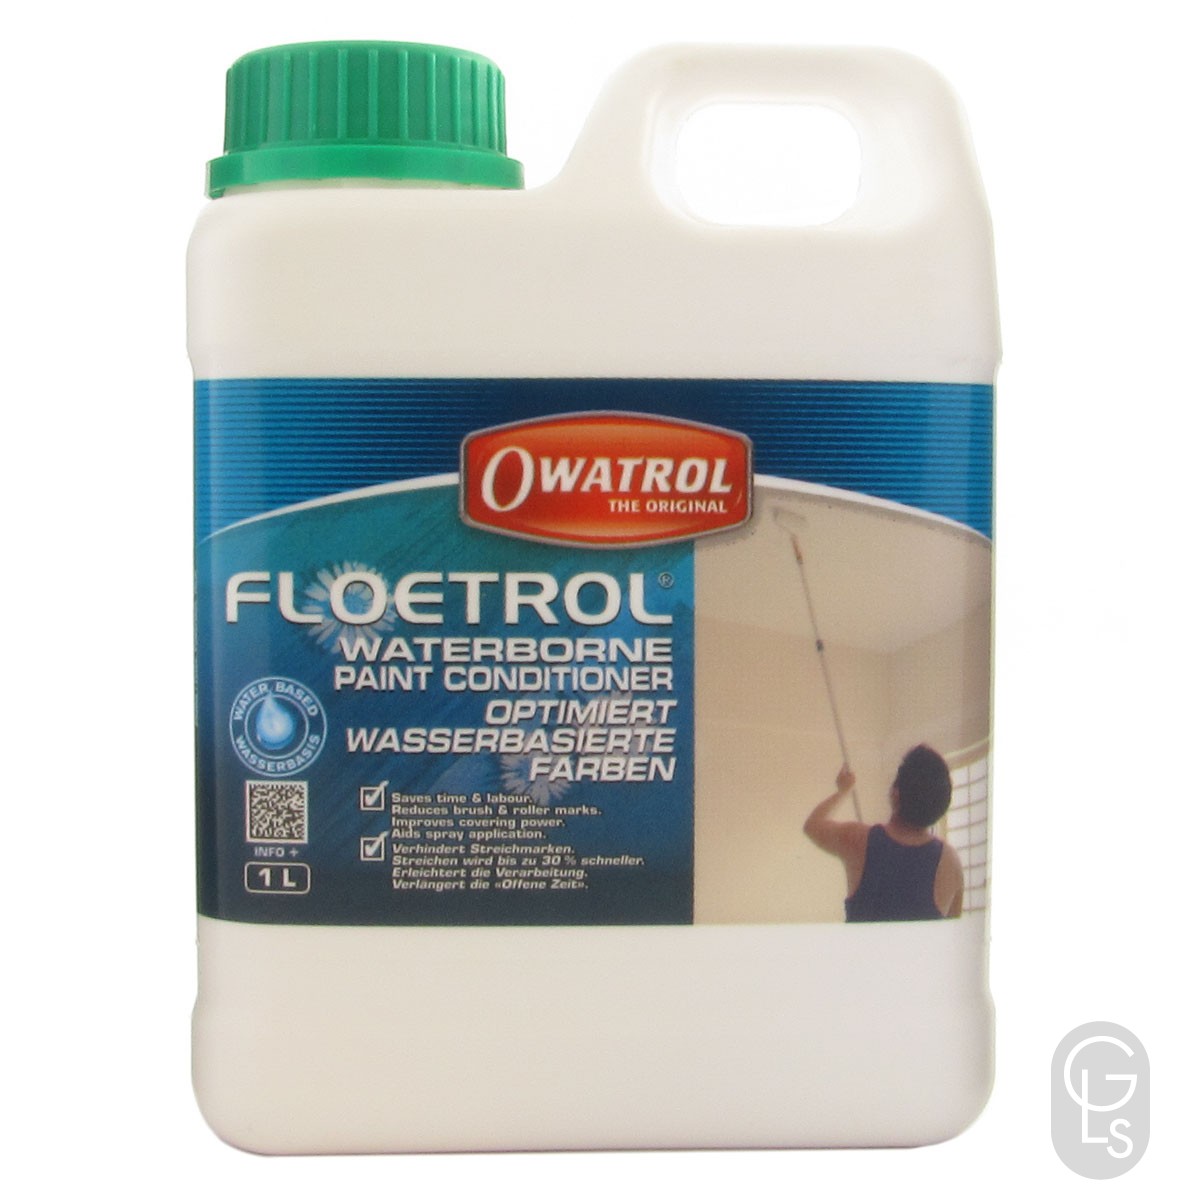 Floetrol -1L